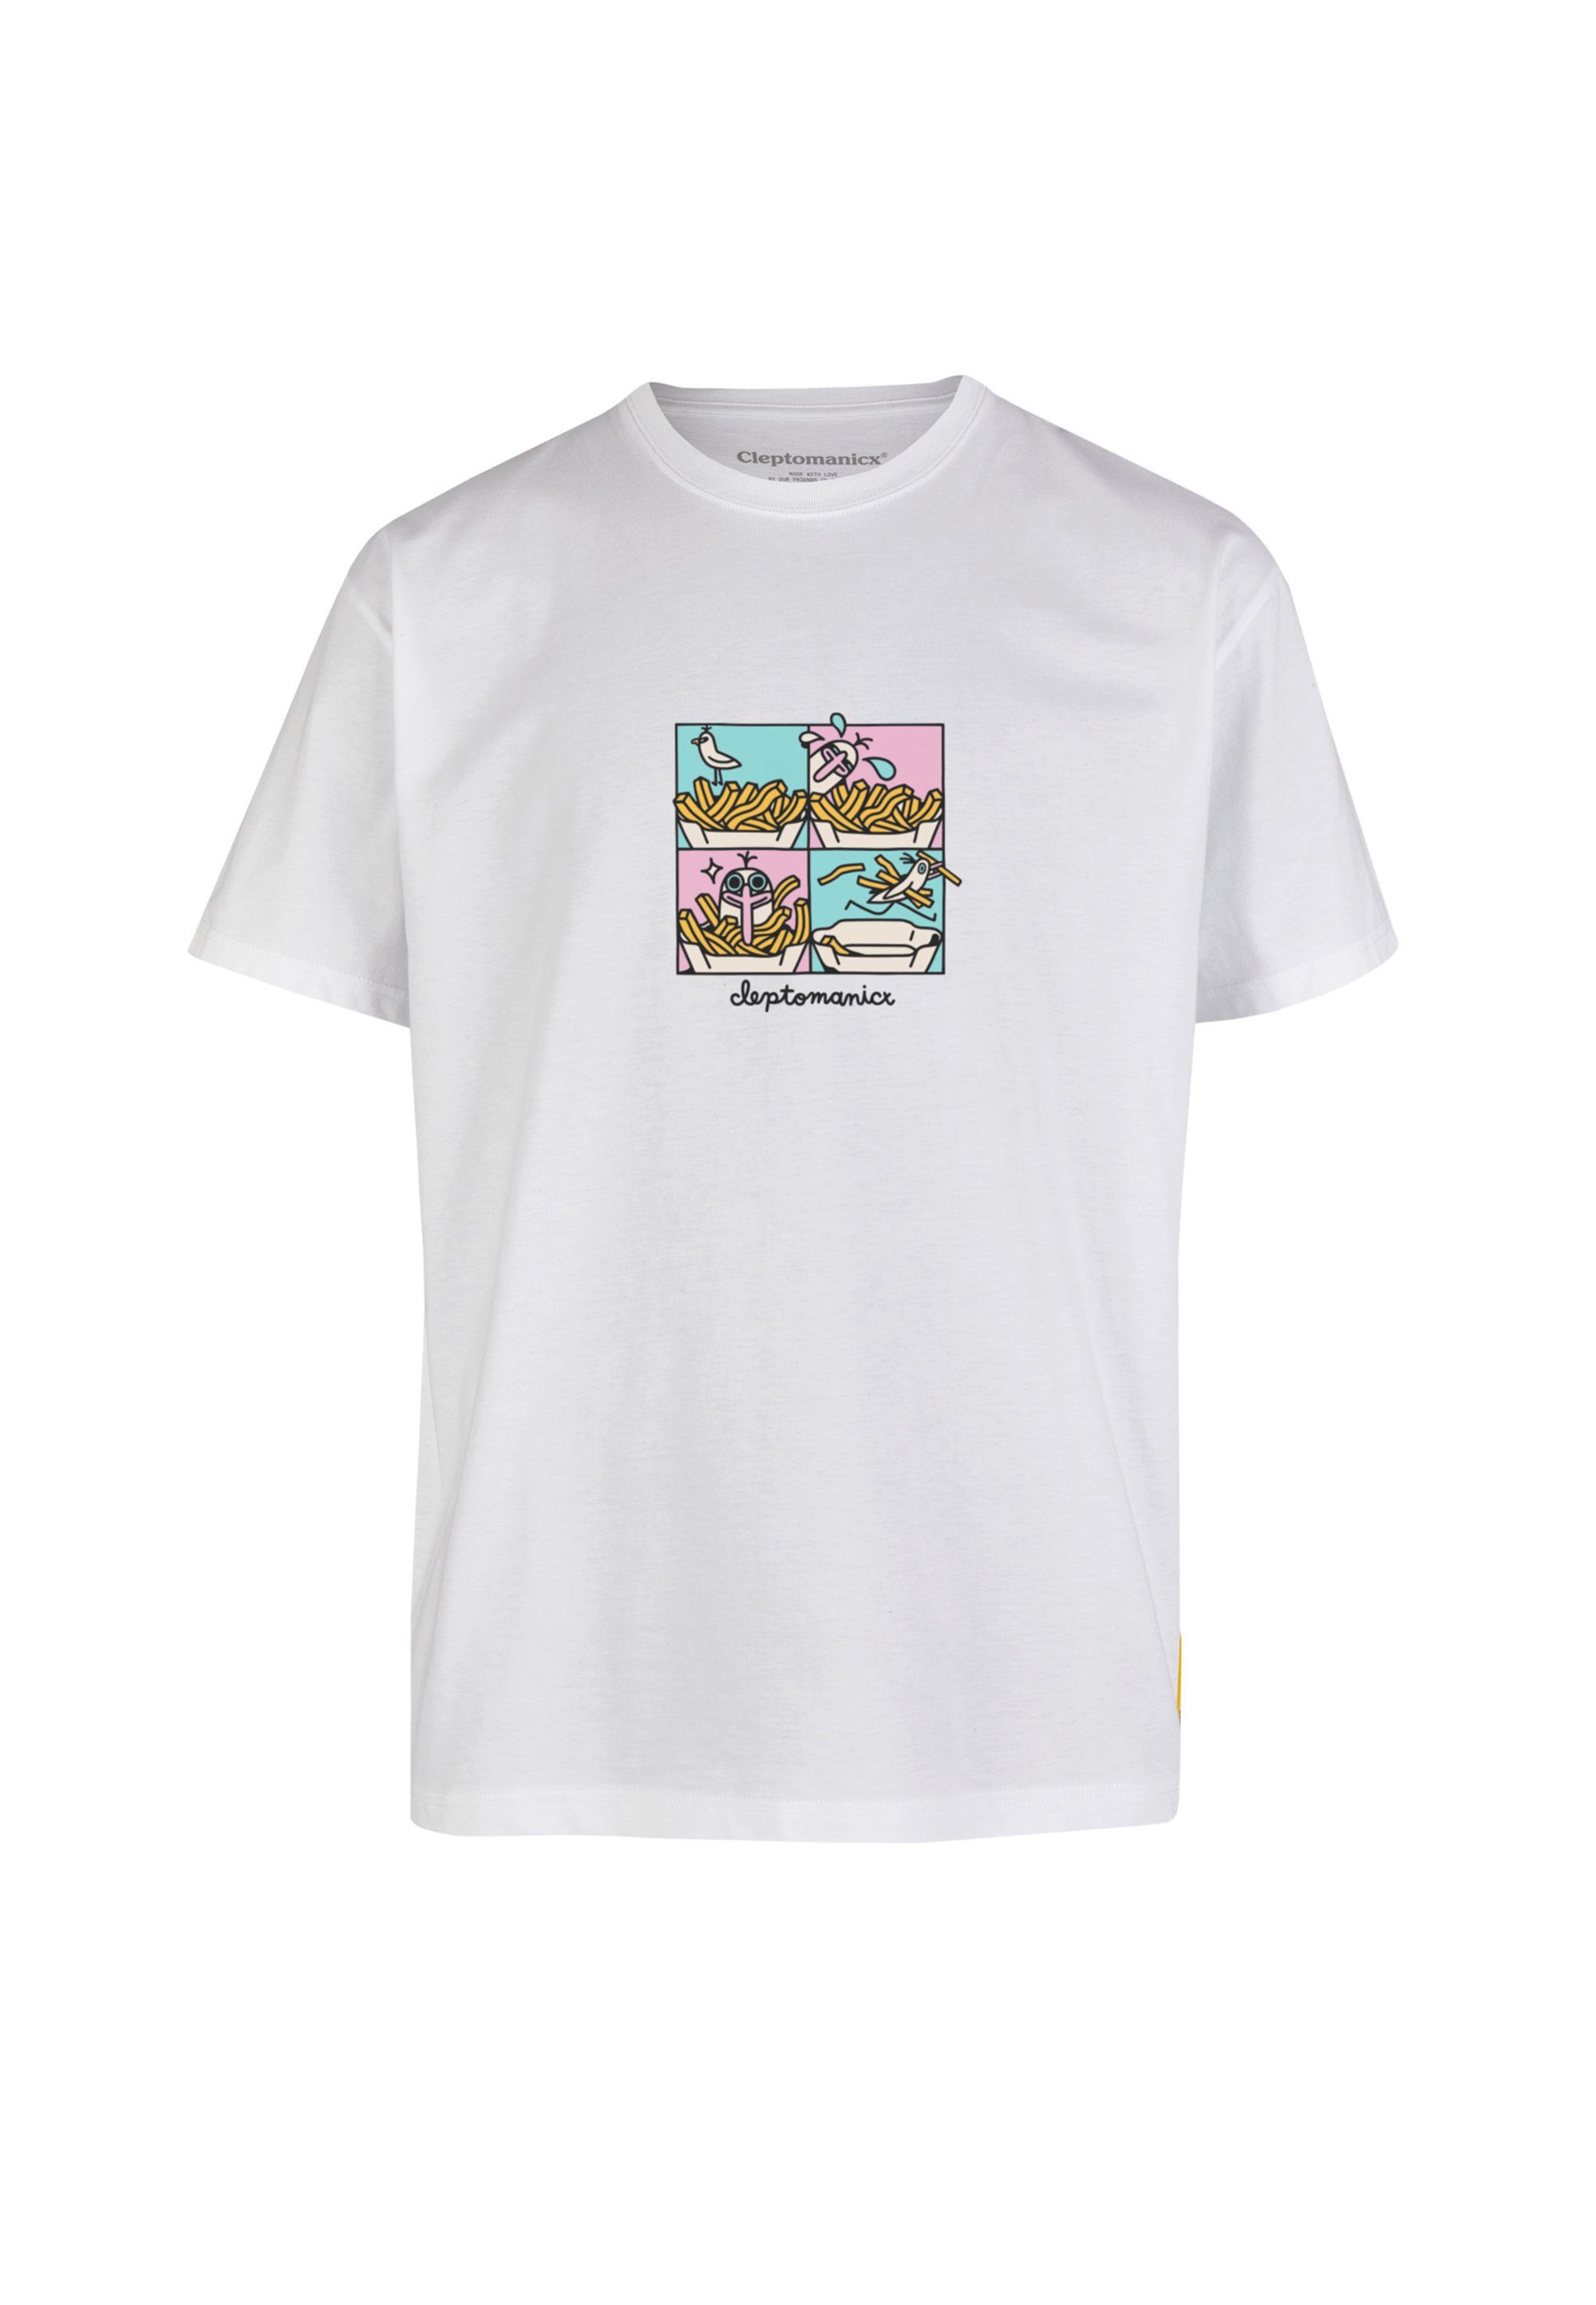 Cleptomanicx T-Shirt Stealy Gull weiß Frontprint mit coolem